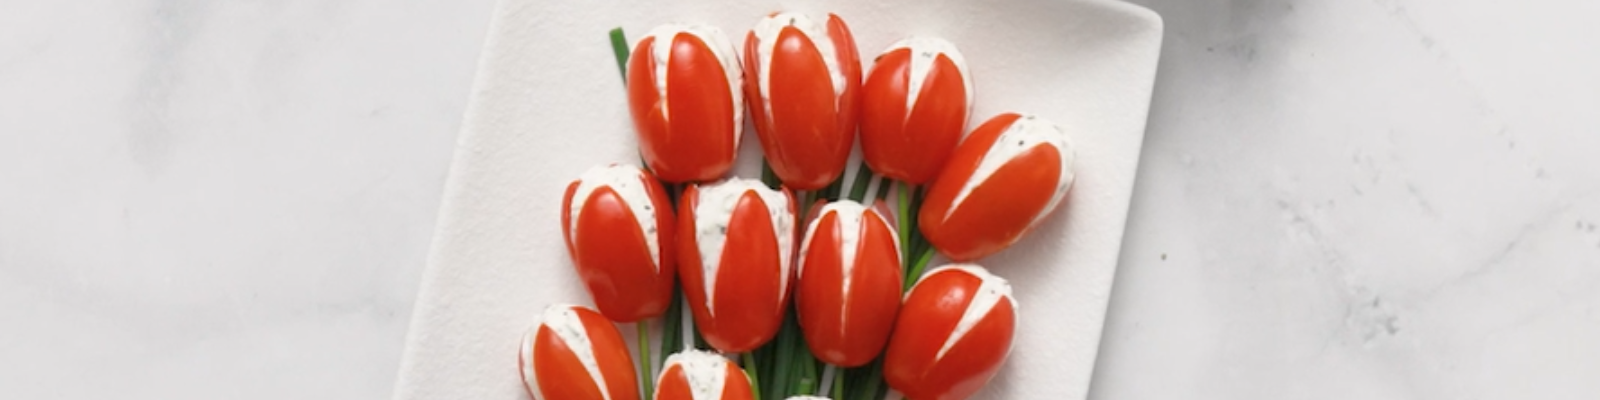 Tulips Recipe